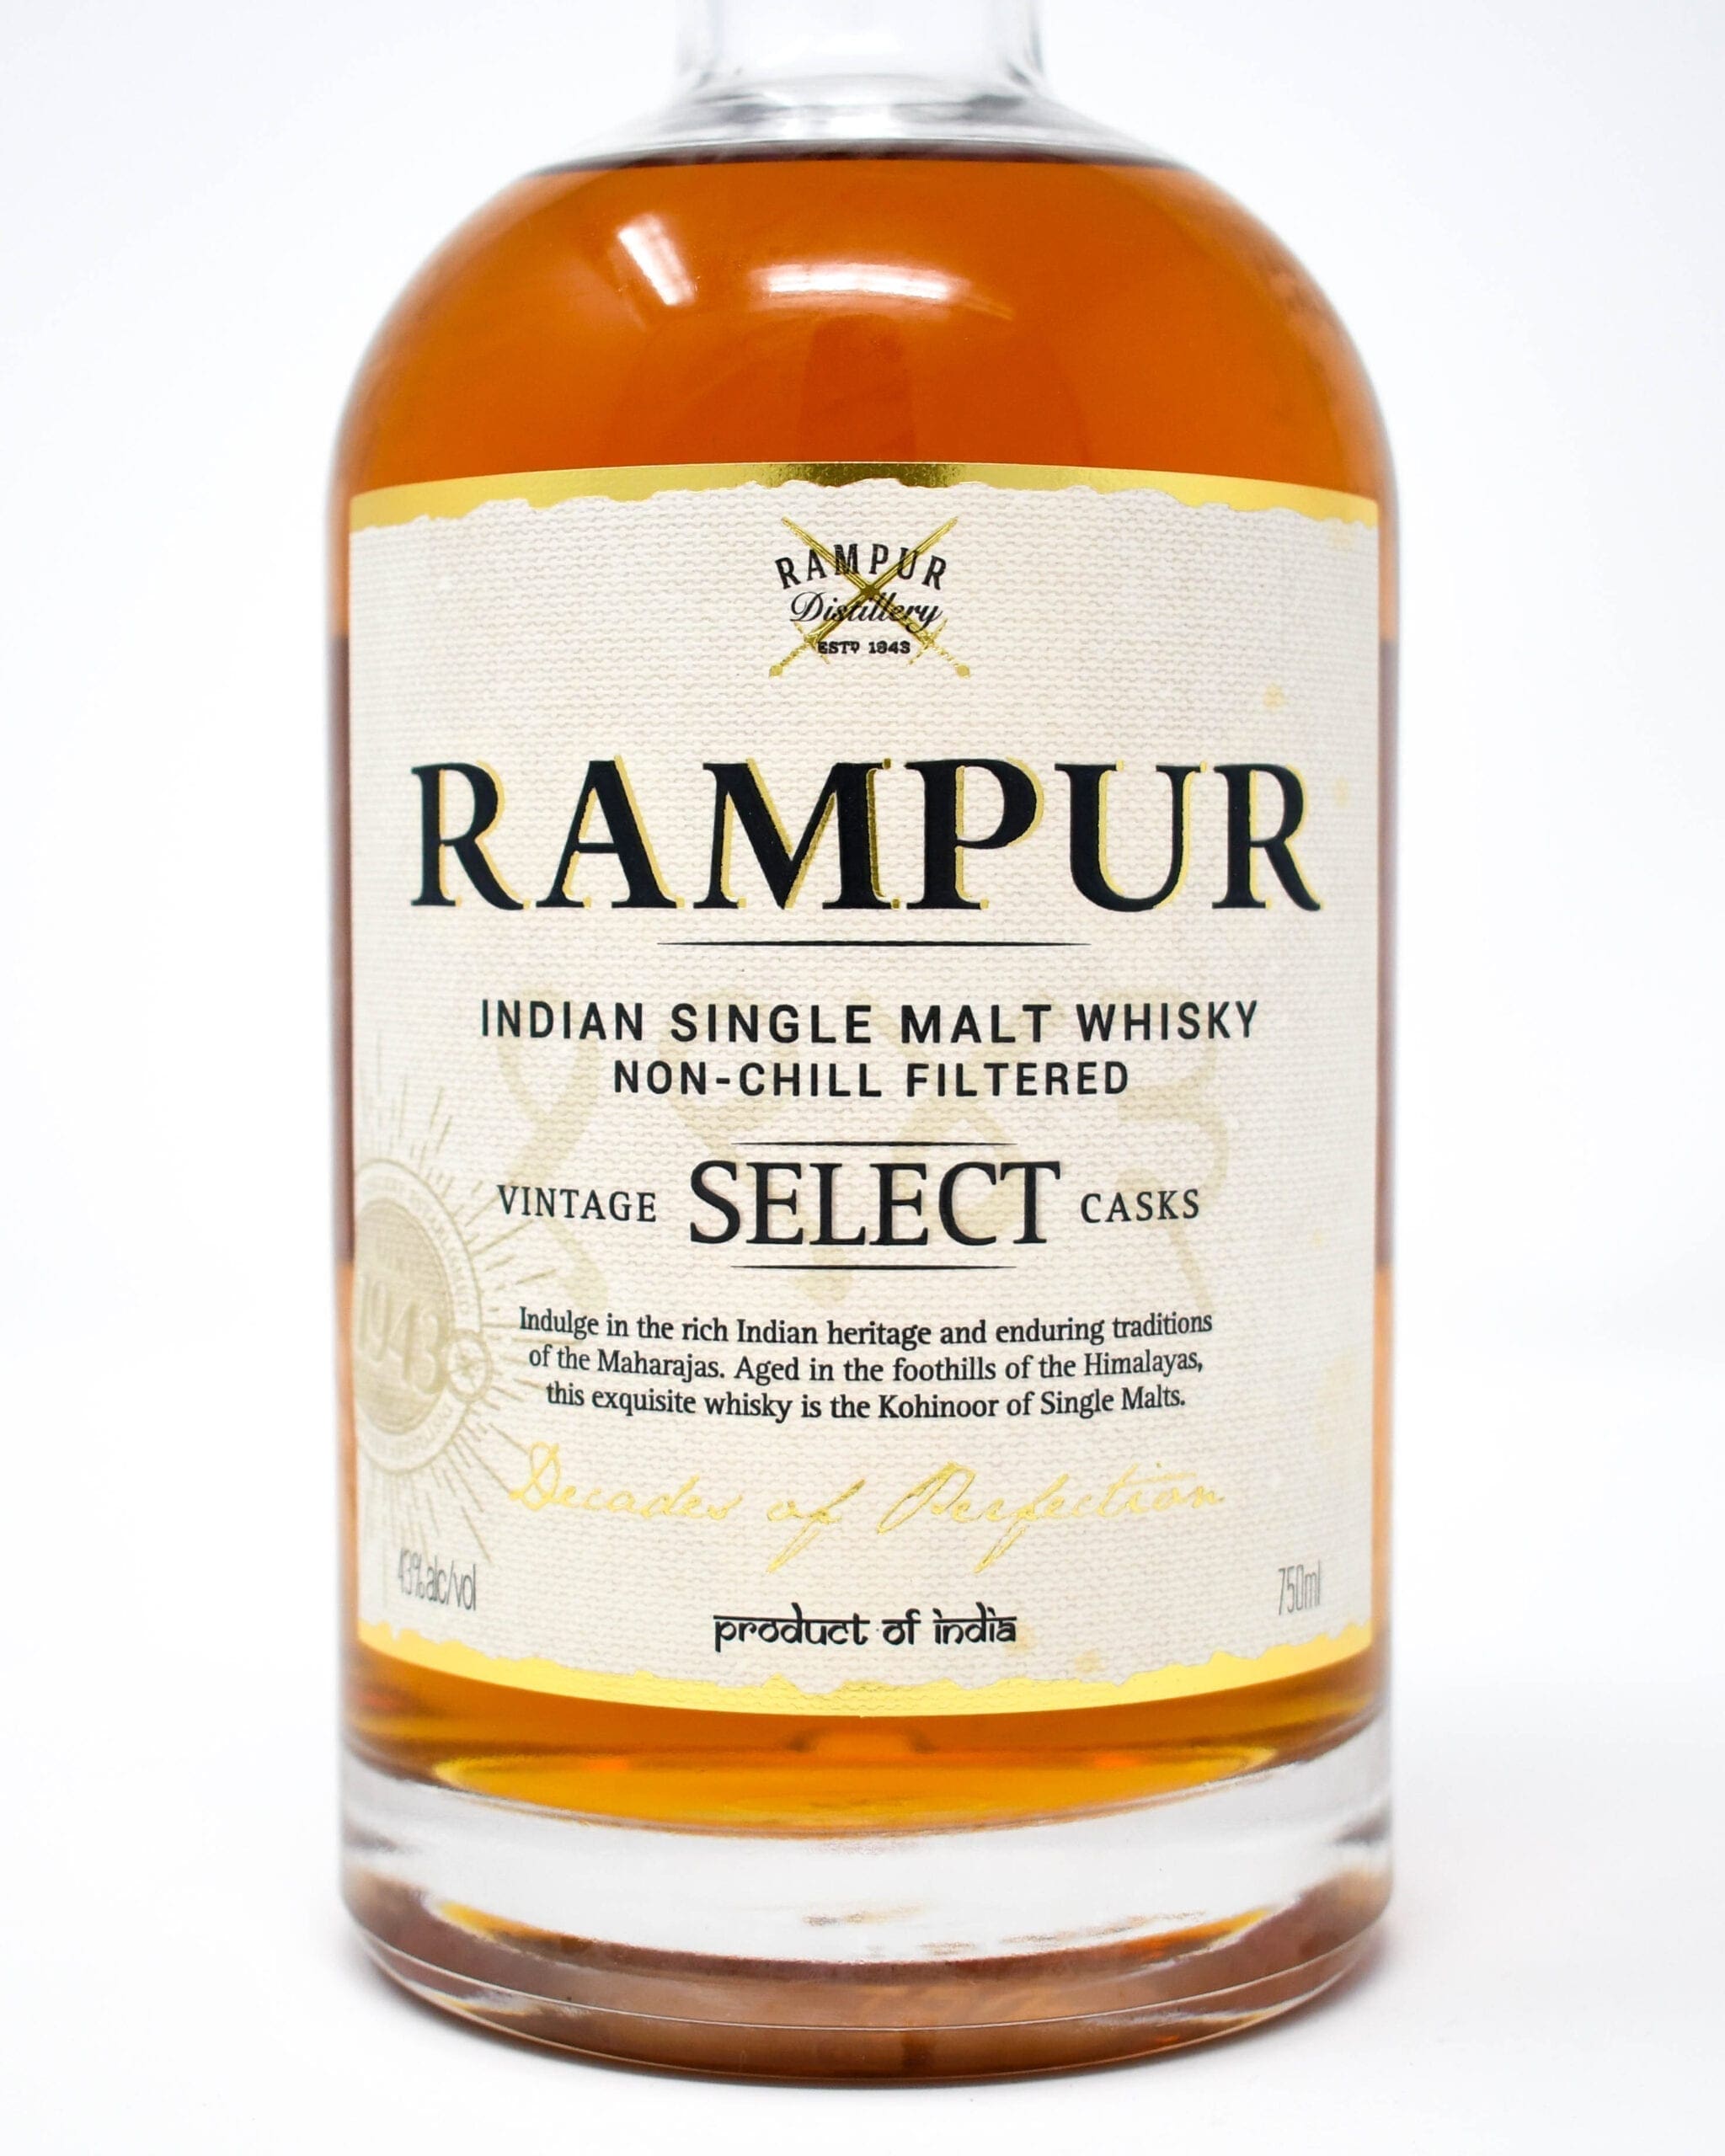 Rampur Indian Single Malt Whisky, Vintage Select Casks